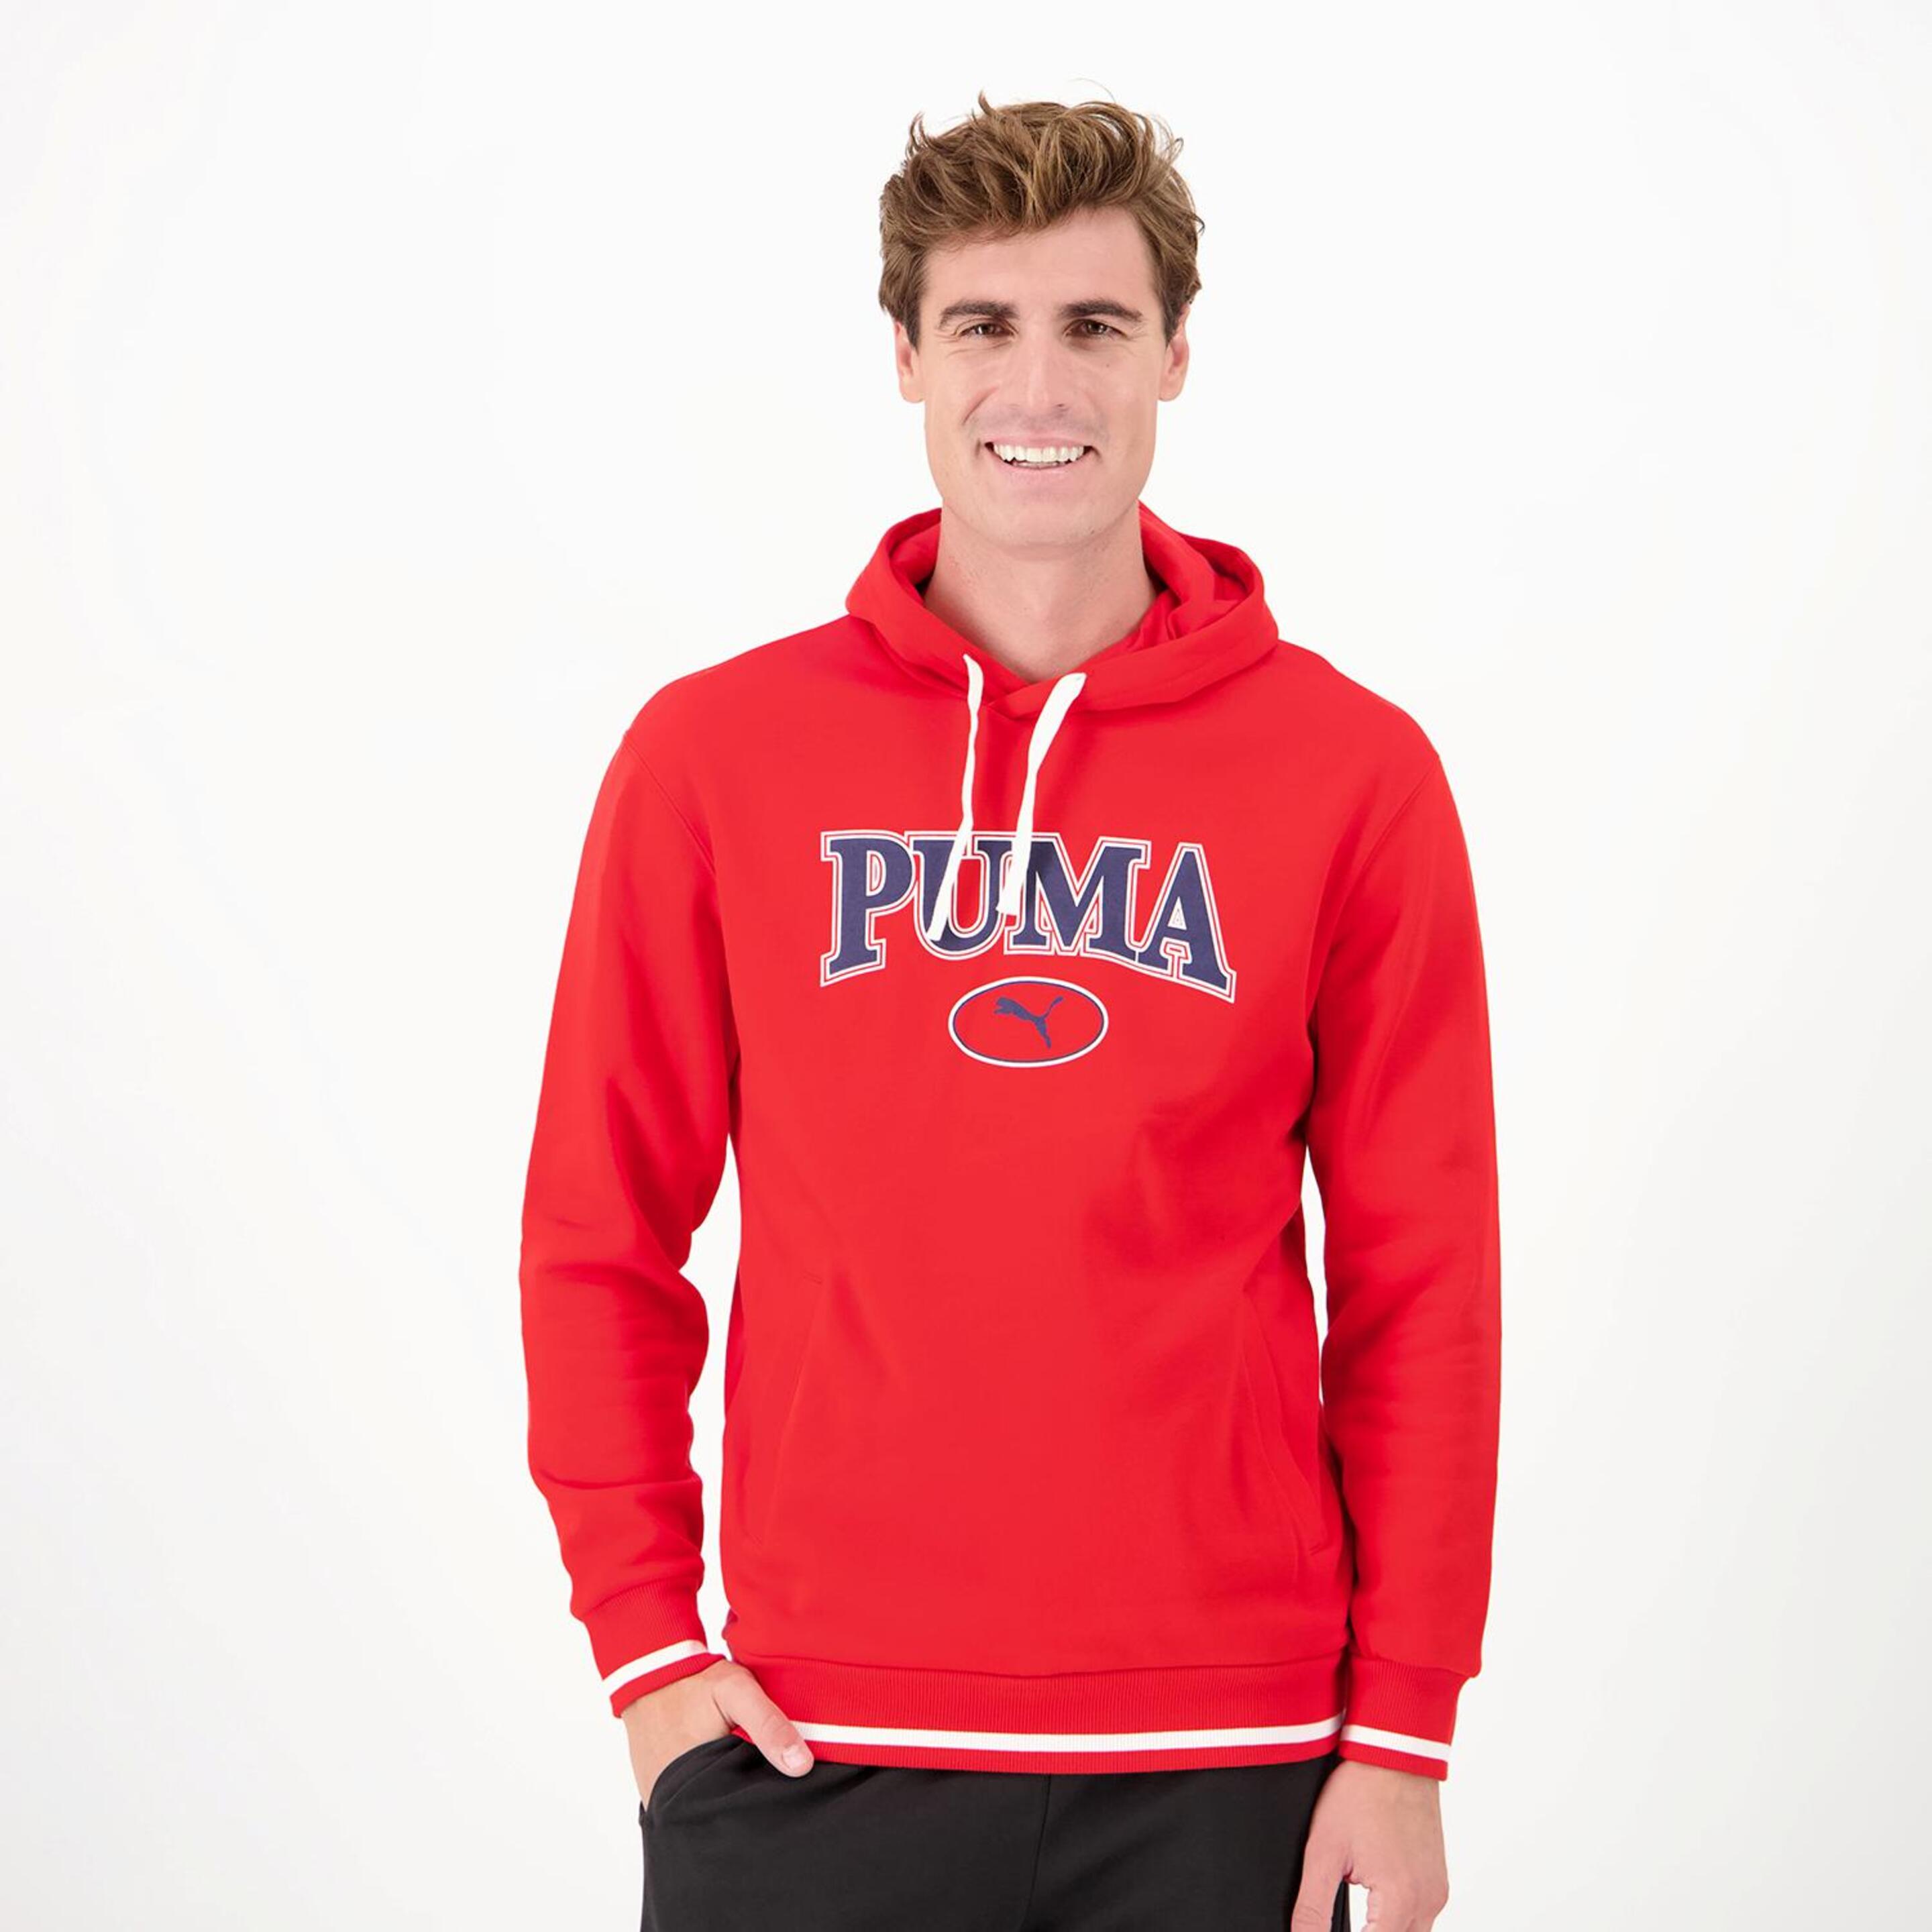 Puma Squad - rojo - Sweatshirt Homem